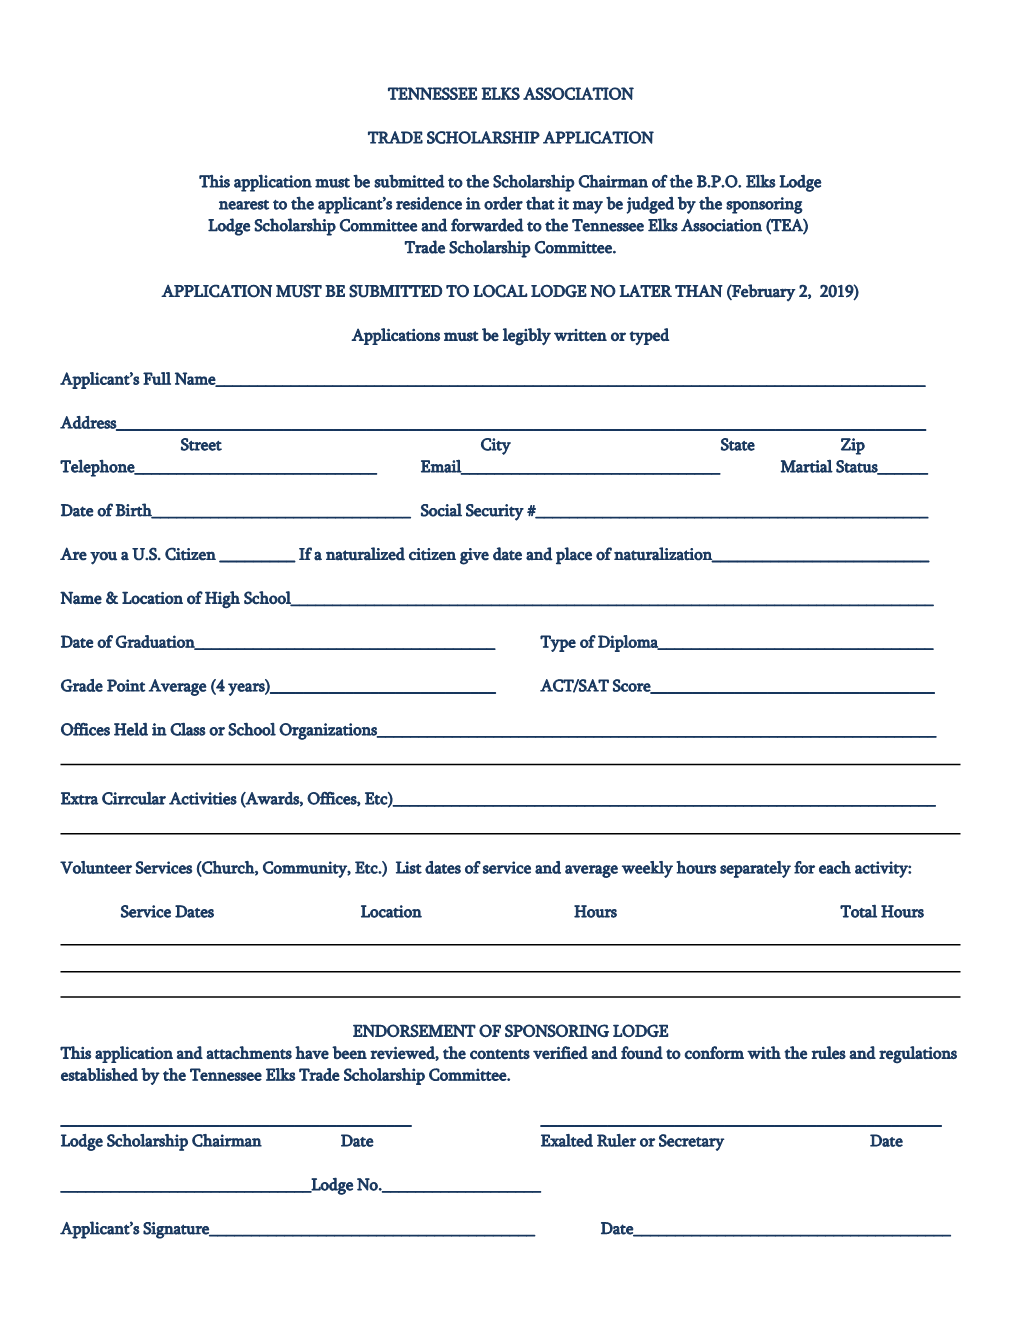 Tennessee Elks Association Trade Scholarship Application